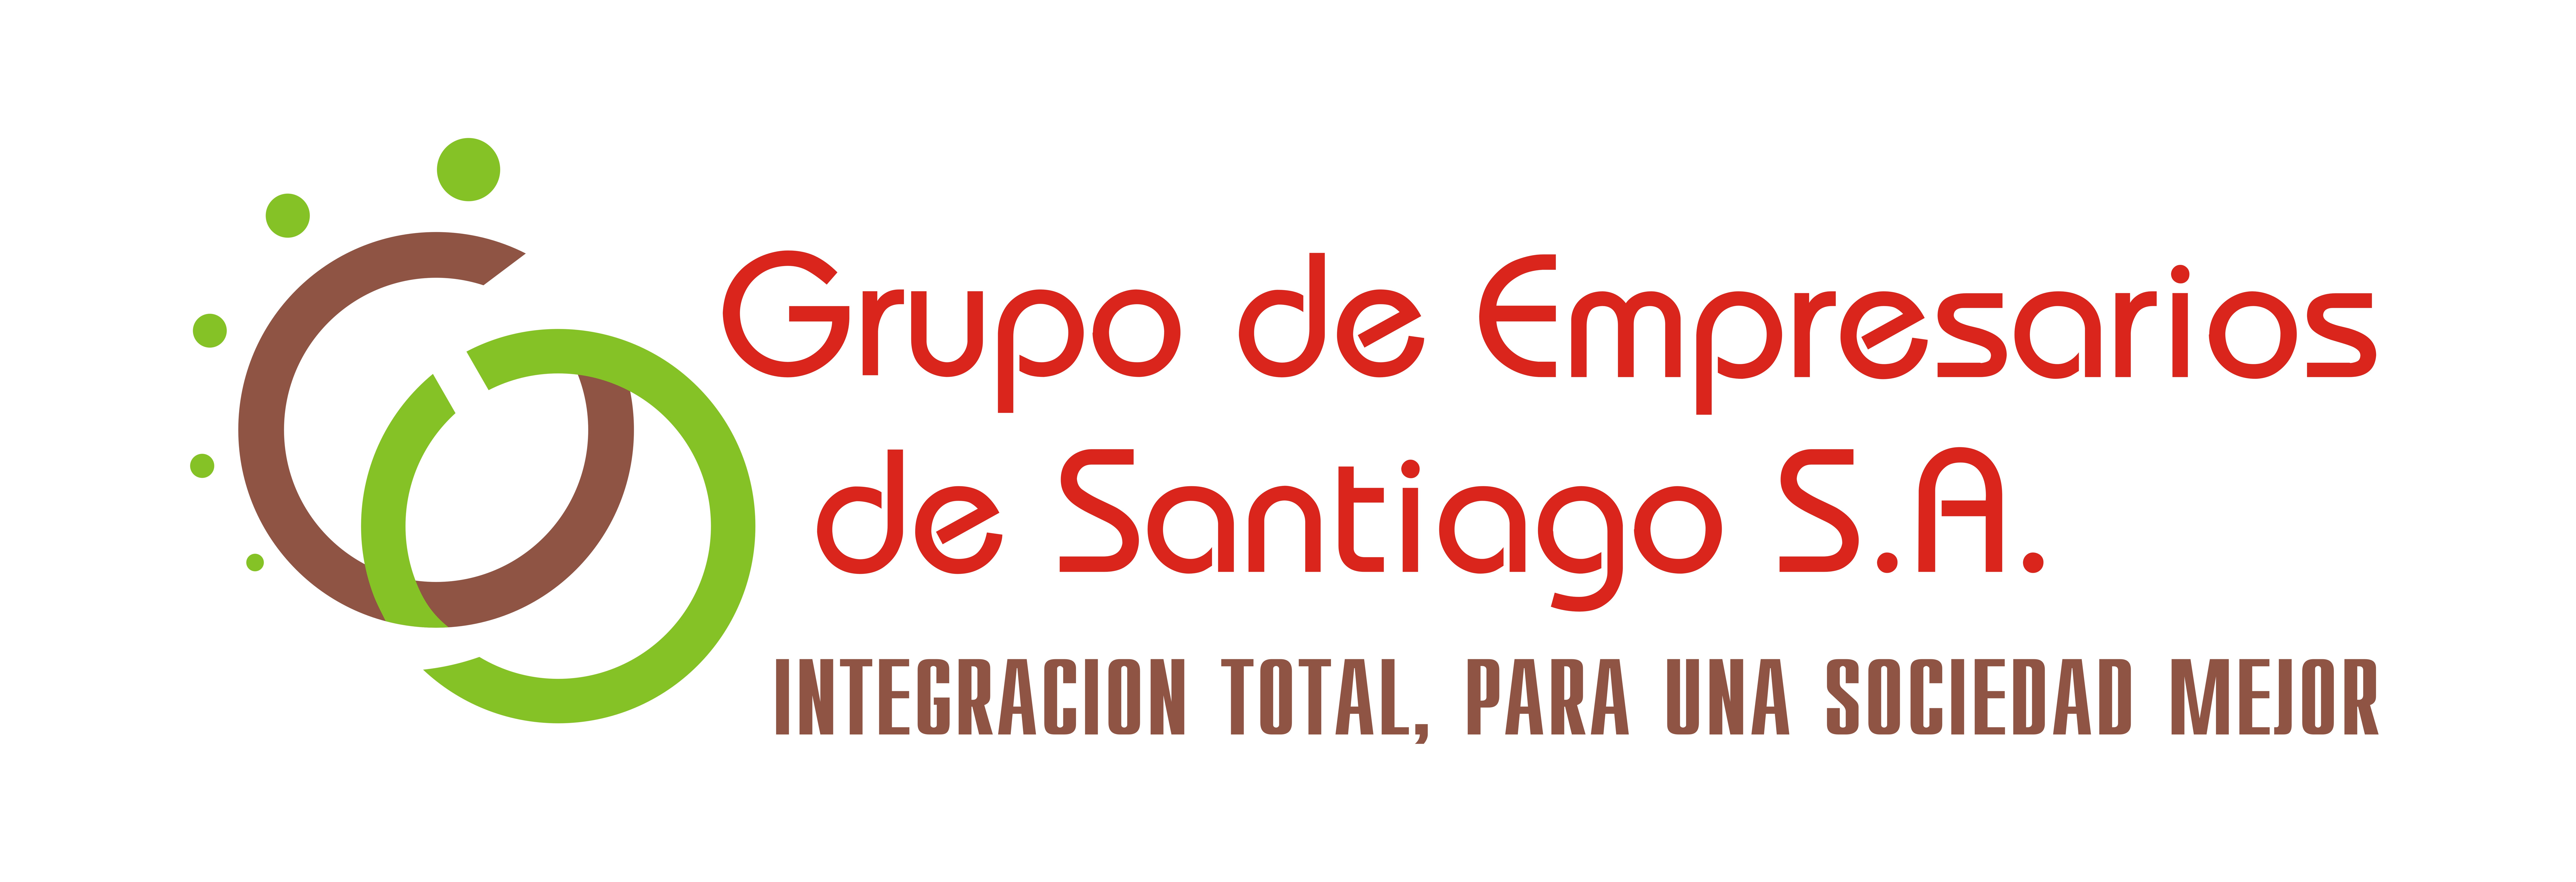 Grupo de Empresarios de Santiago, S.A.